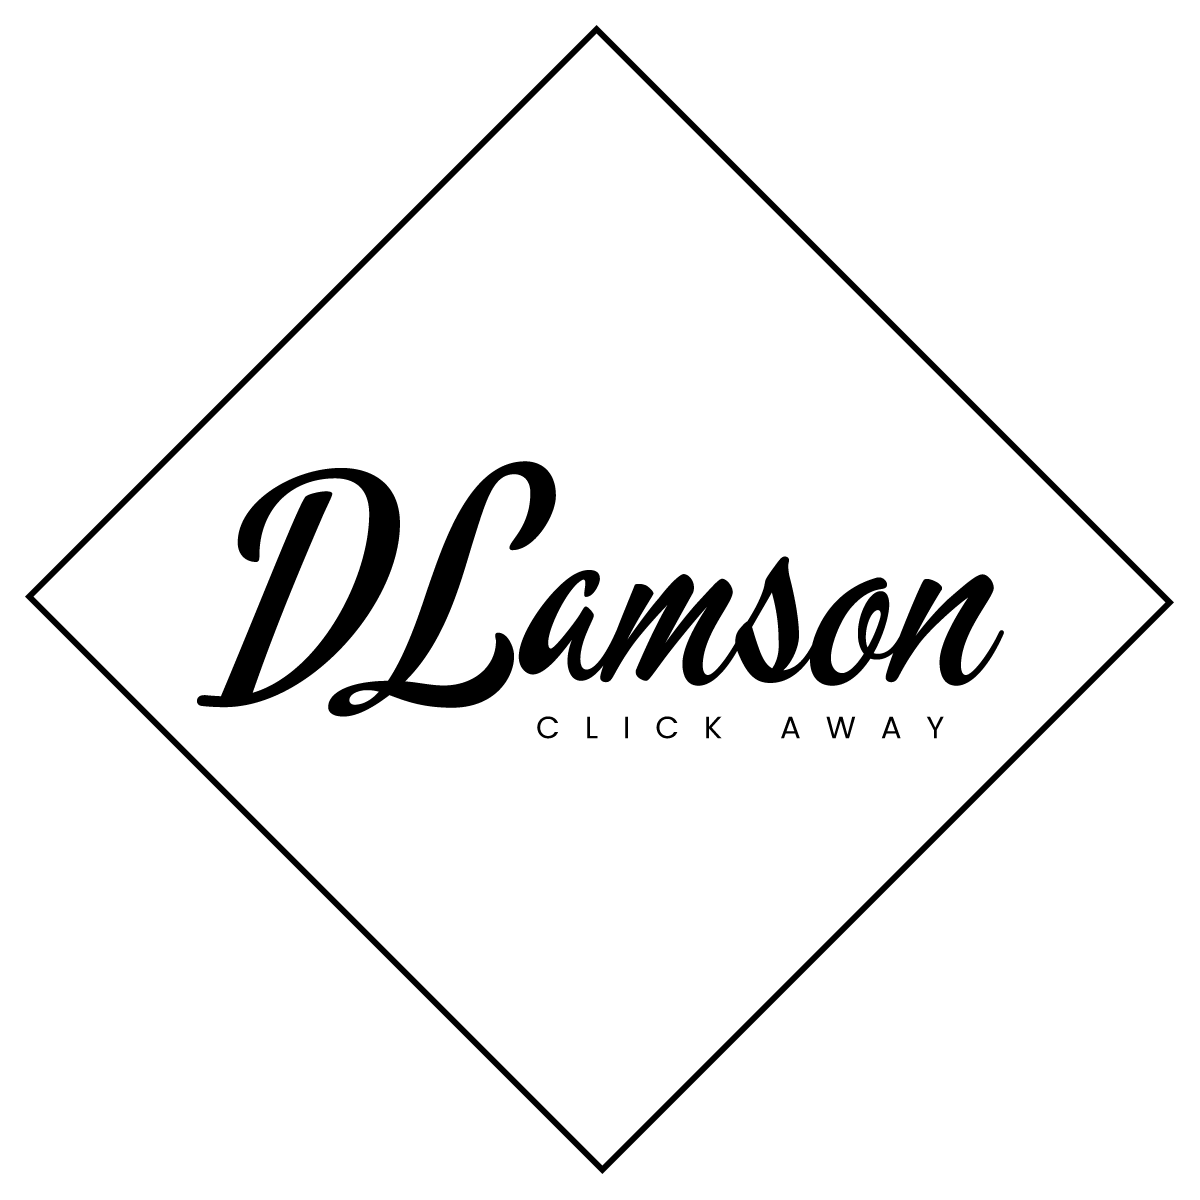 DebLamson logo